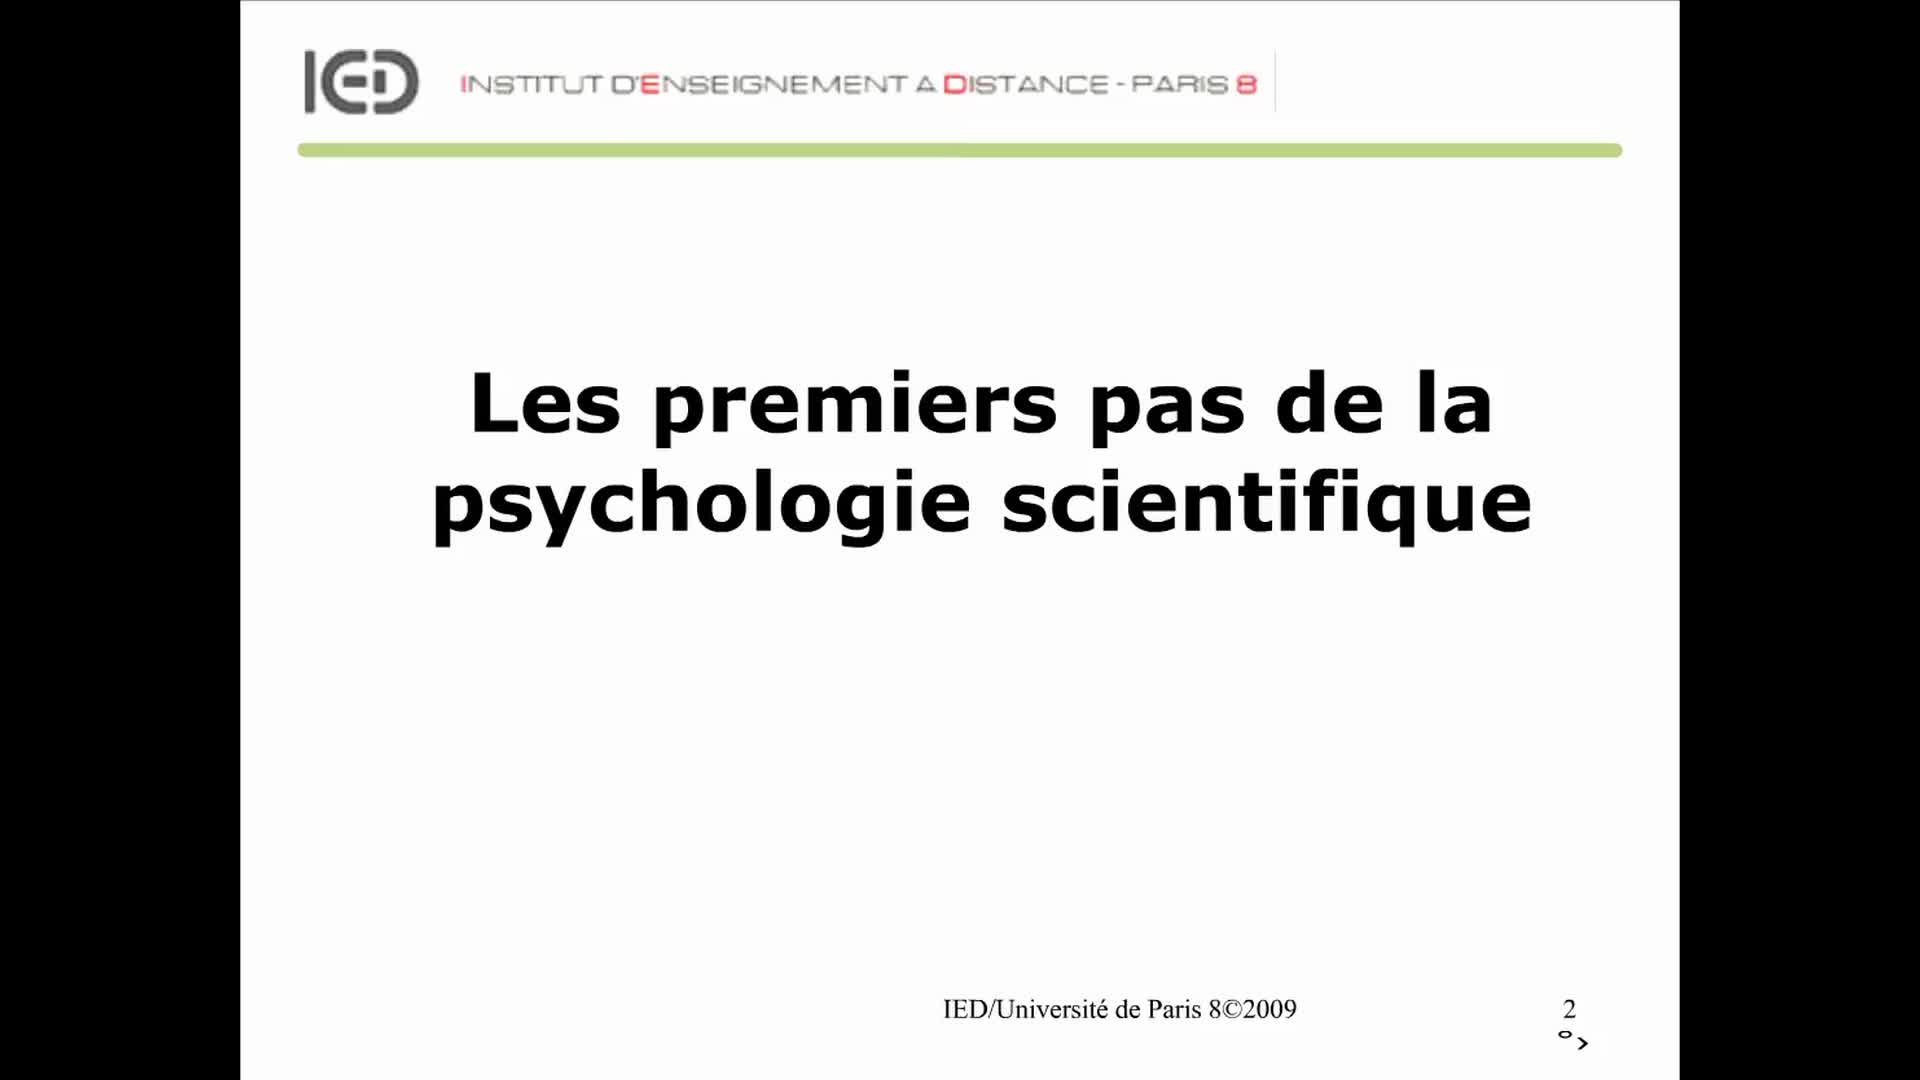 Les premiers pas de la psychologie scientifique